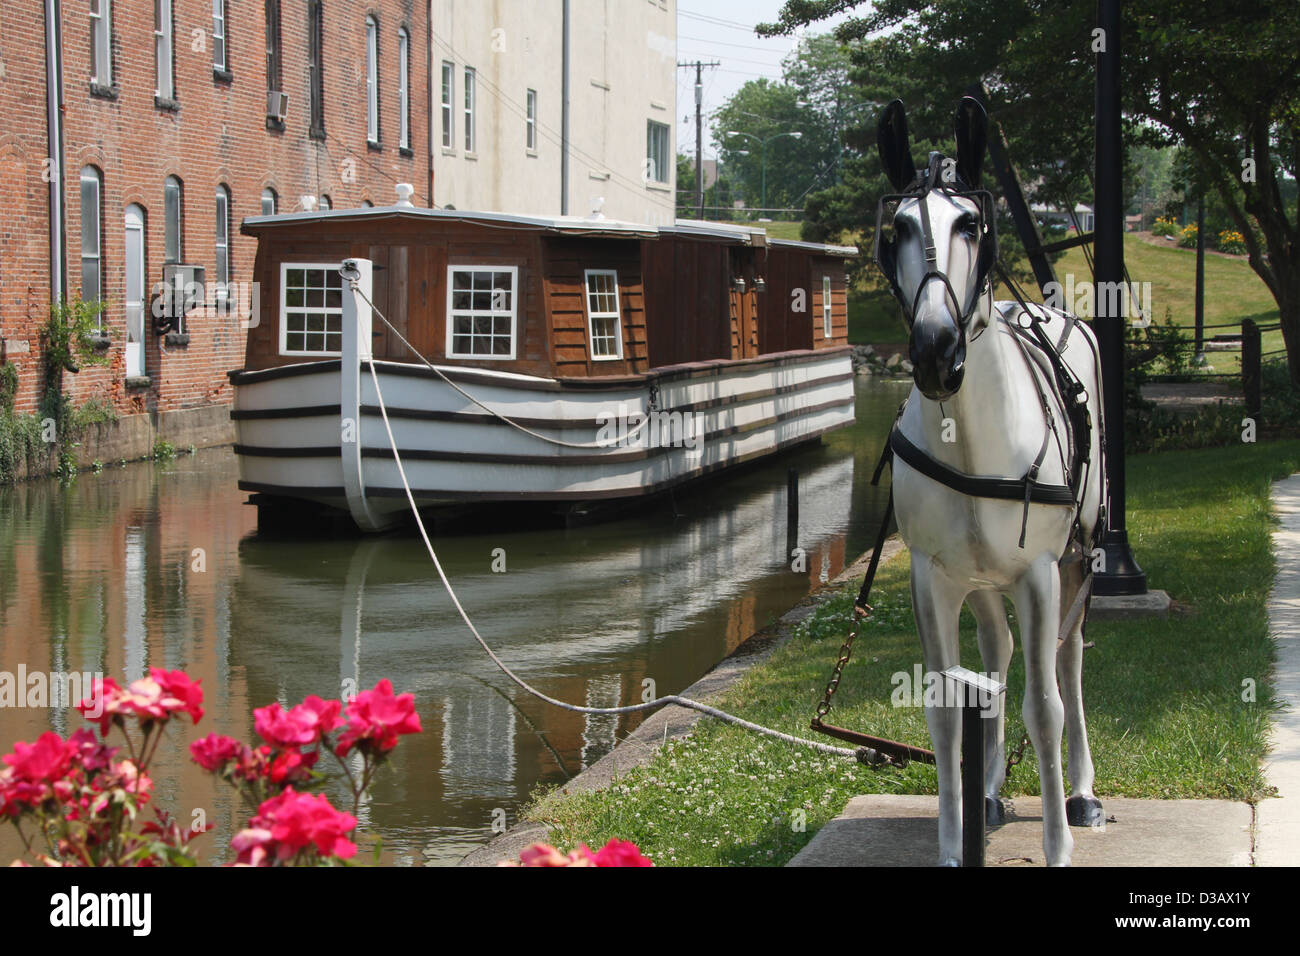 Kanal und Boot. Kanalboot auf einem restaurierten Teil der Miami - Erie-Kanal in St. Marys, Ohio, USA. Stockfoto